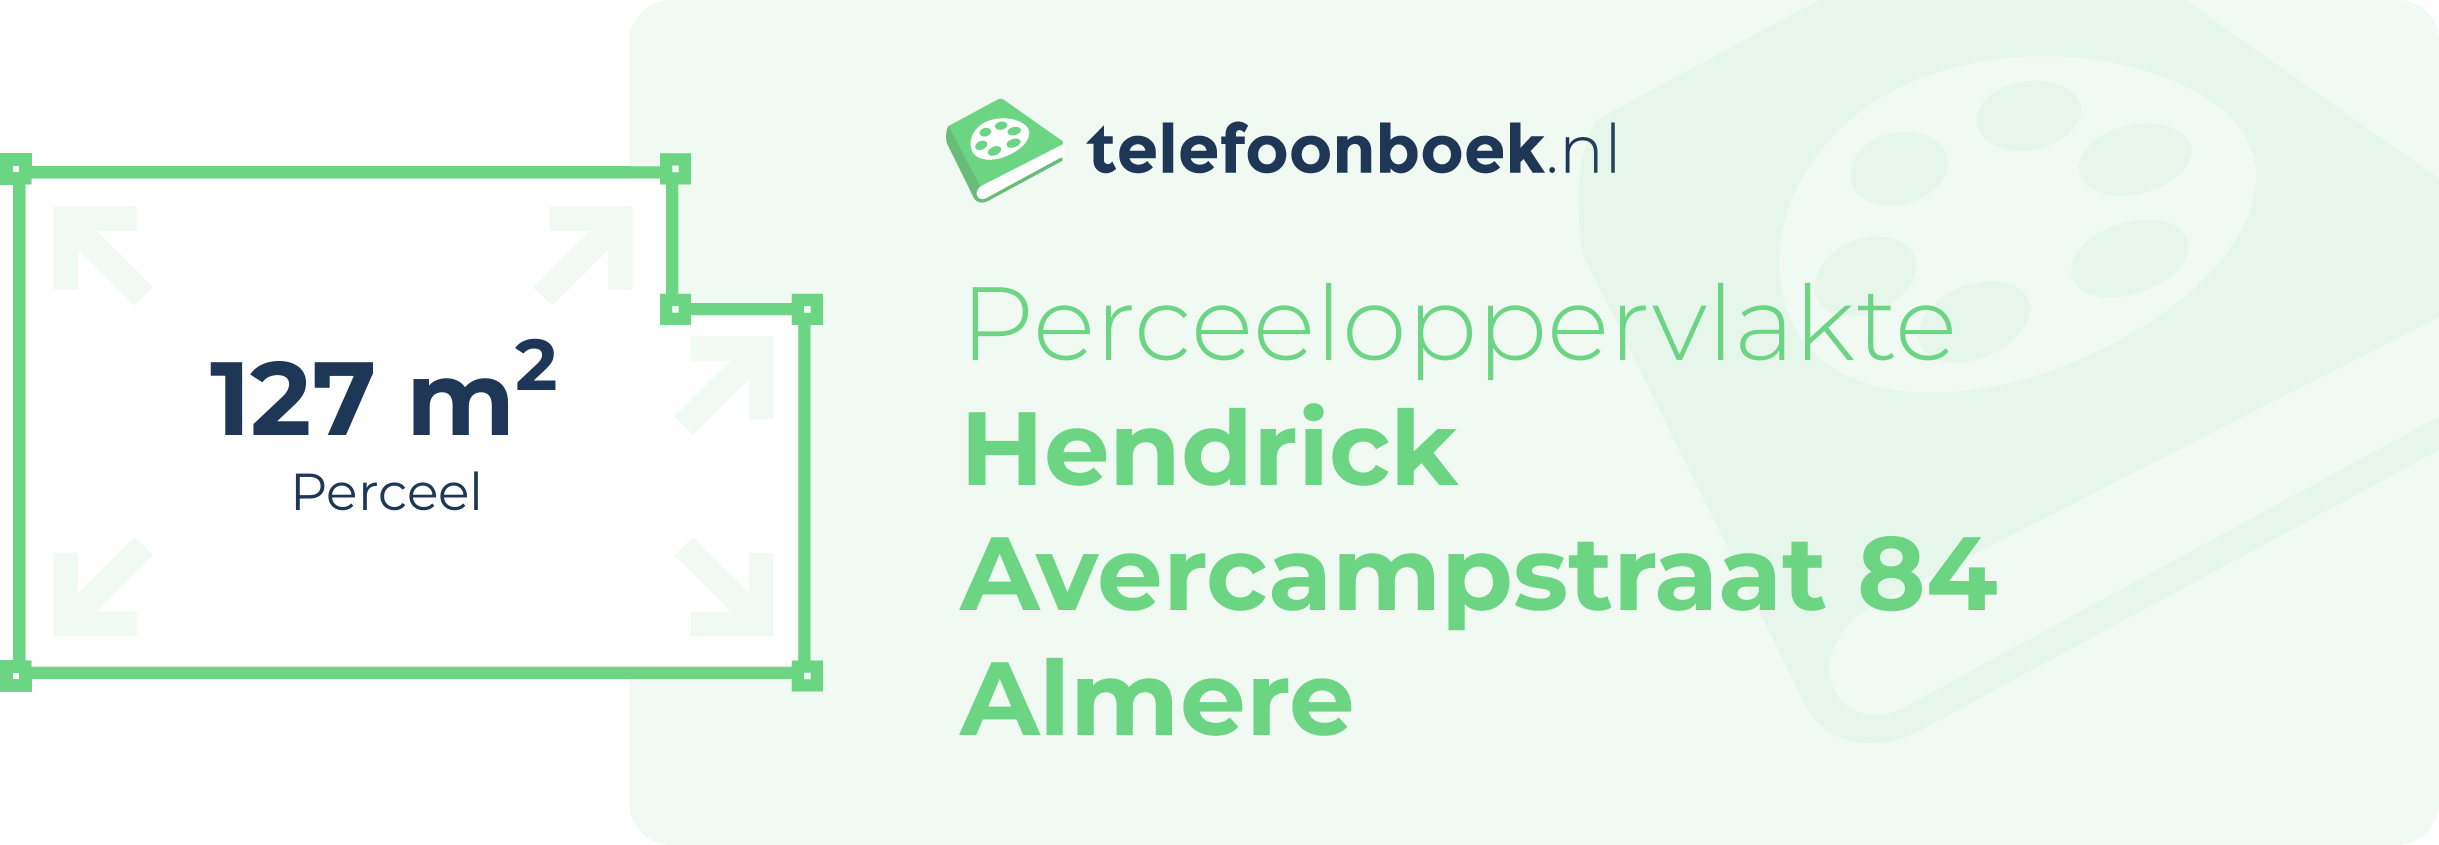 Perceeloppervlakte Hendrick Avercampstraat 84 Almere